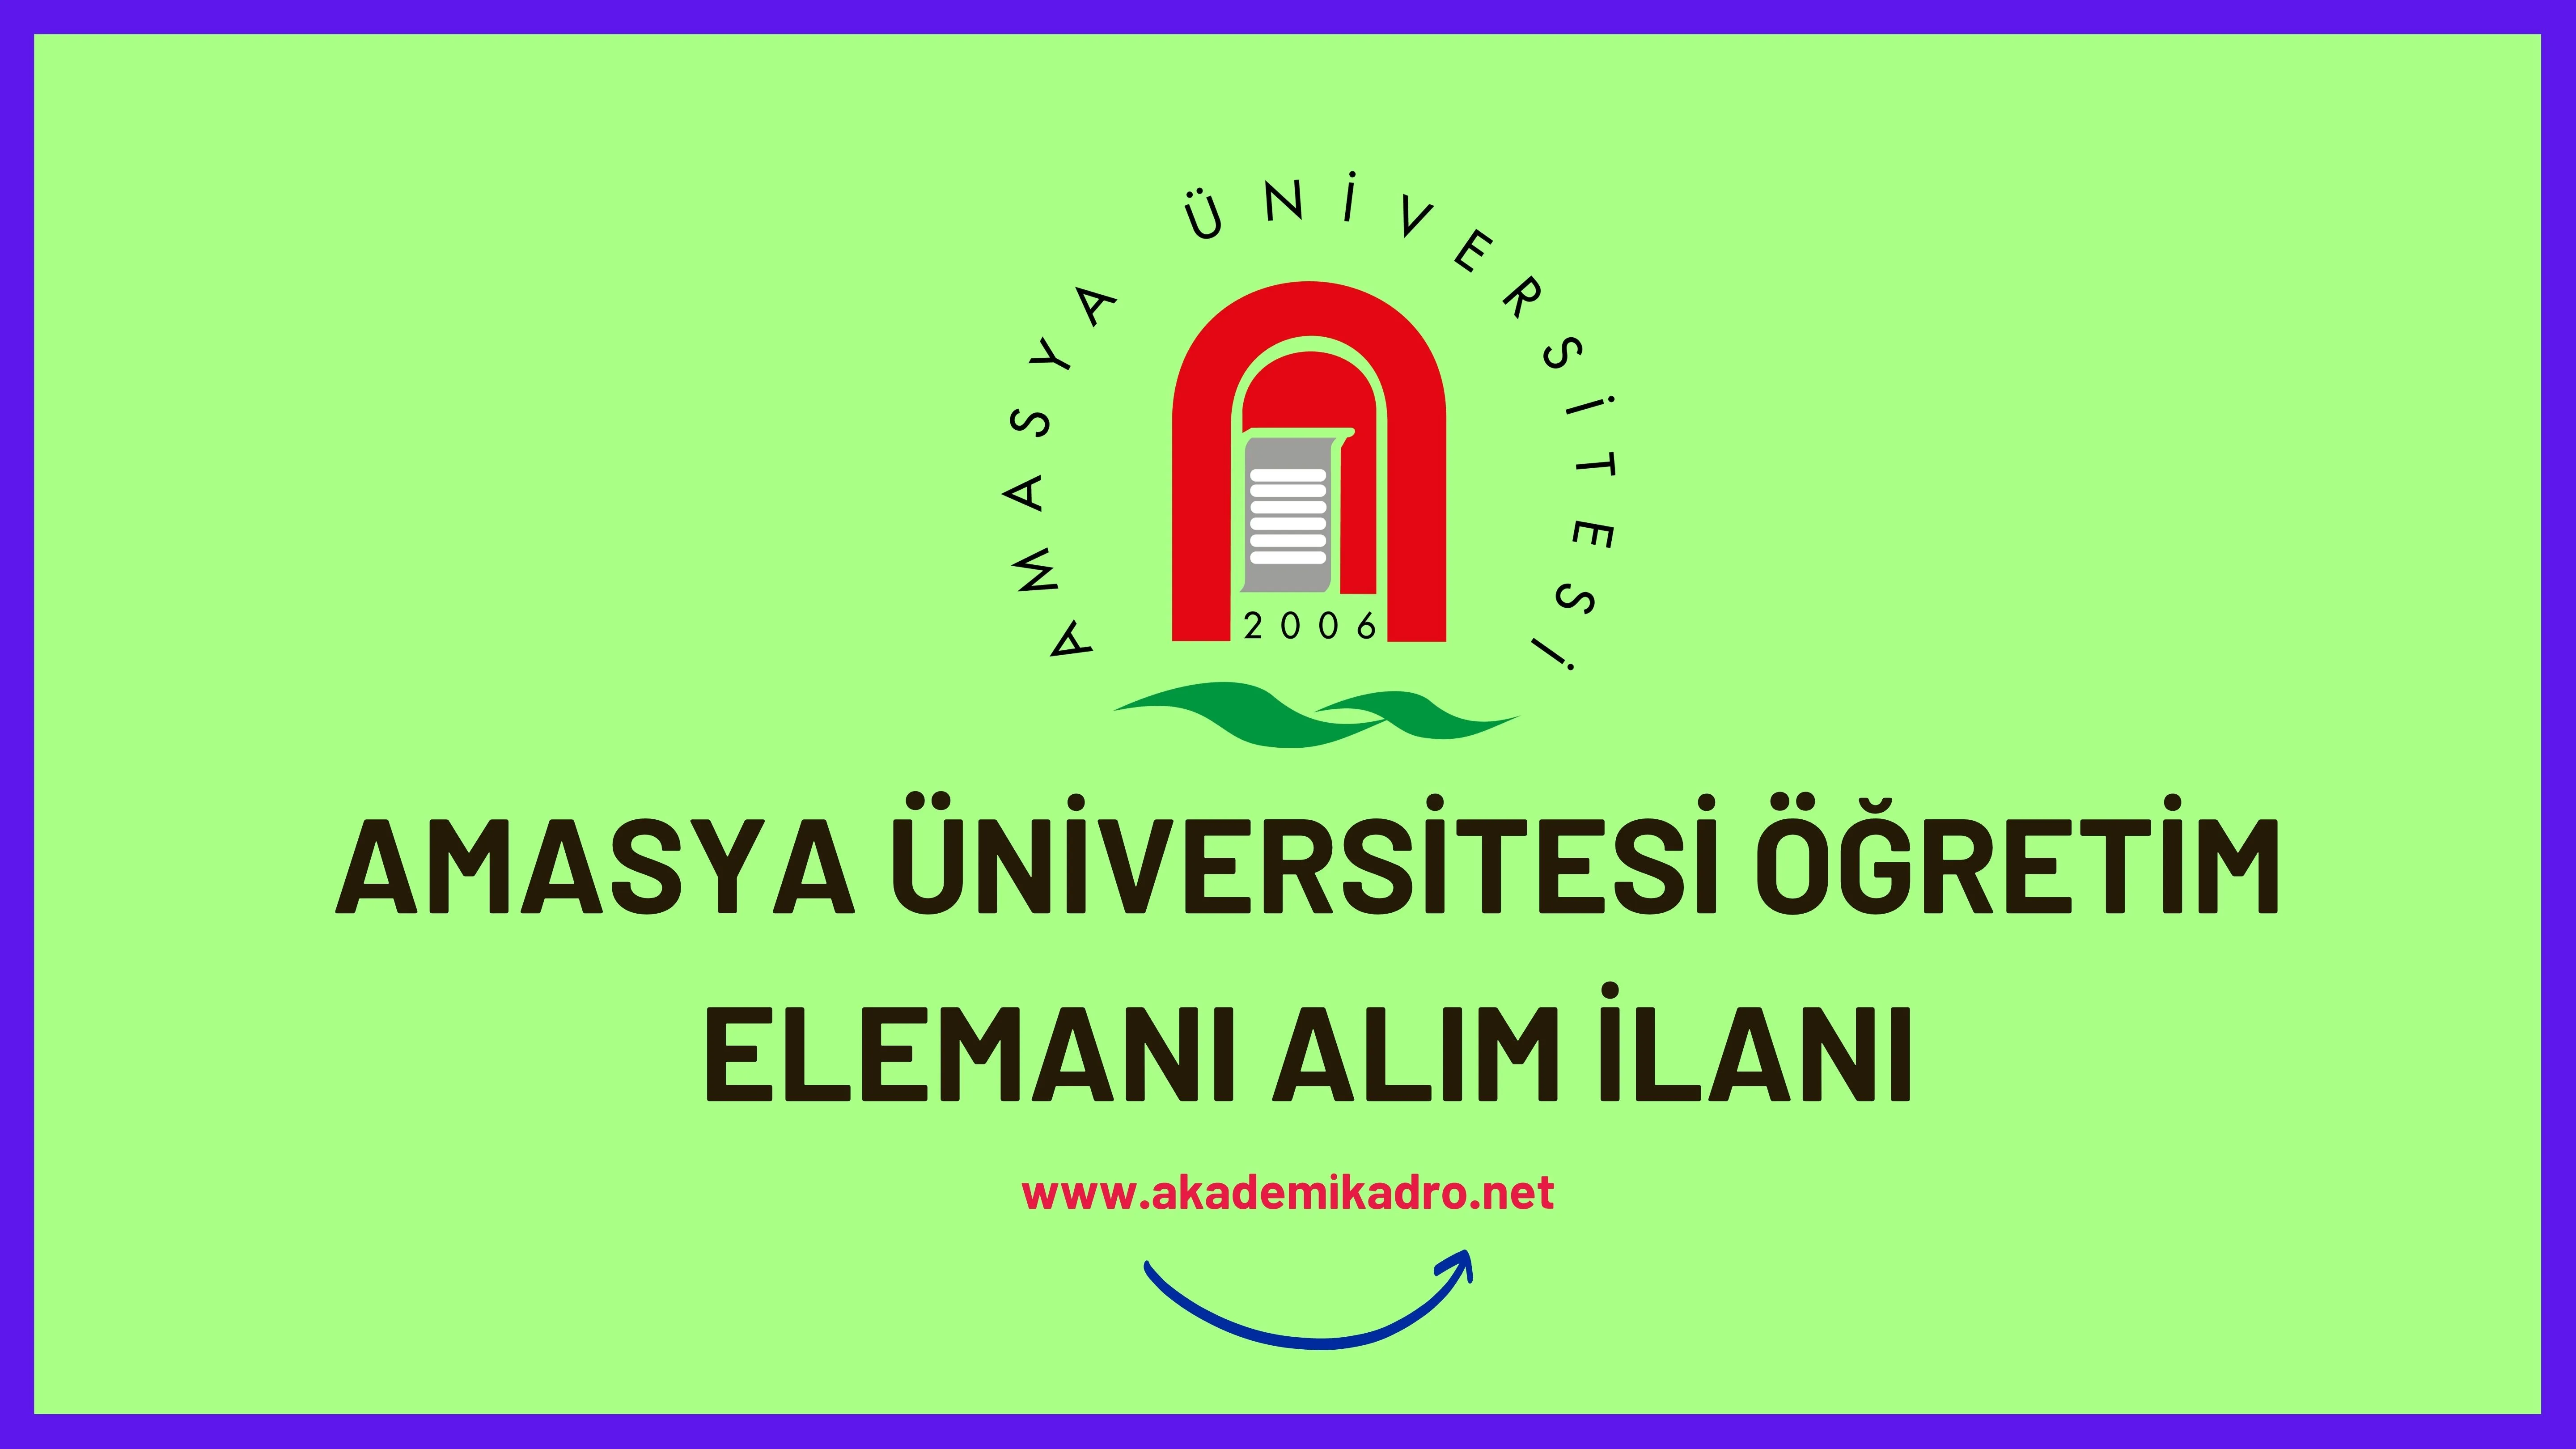 Amasya Üniversitesi 4 Öğretim görevlisi, araştırma görevlisi ve 23 öğretim üyesi olmak üzere 28 Öğretim elemanı alacak.